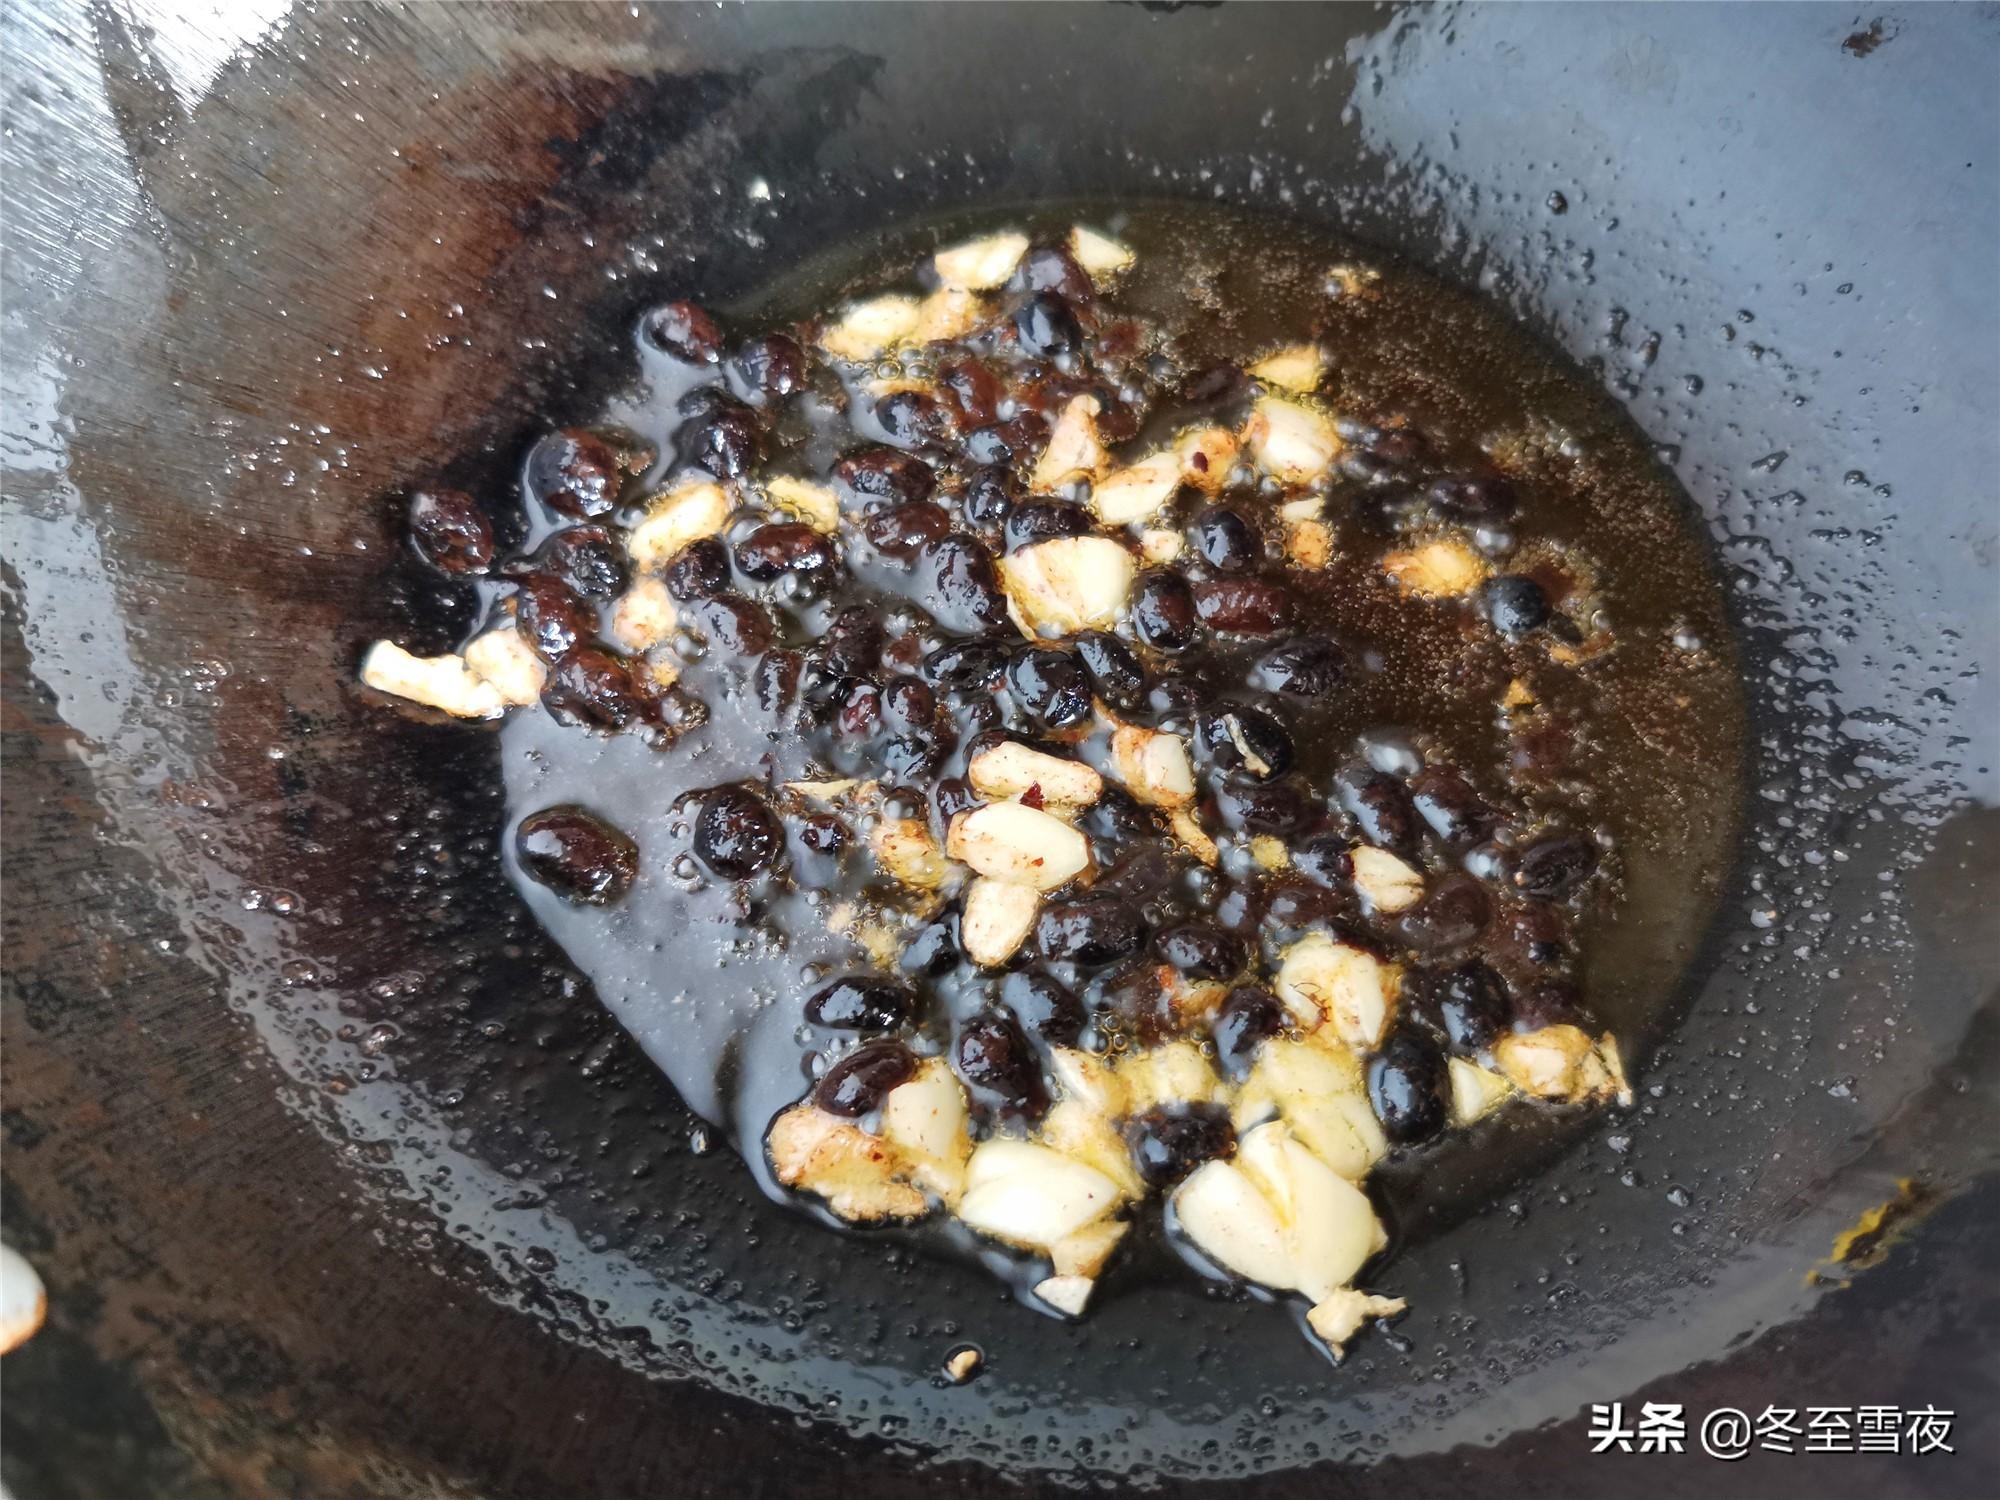 豆豉鲮鱼油麦菜怎样做好吃？教你炒制小技巧，油麦菜颜色翠绿不黄